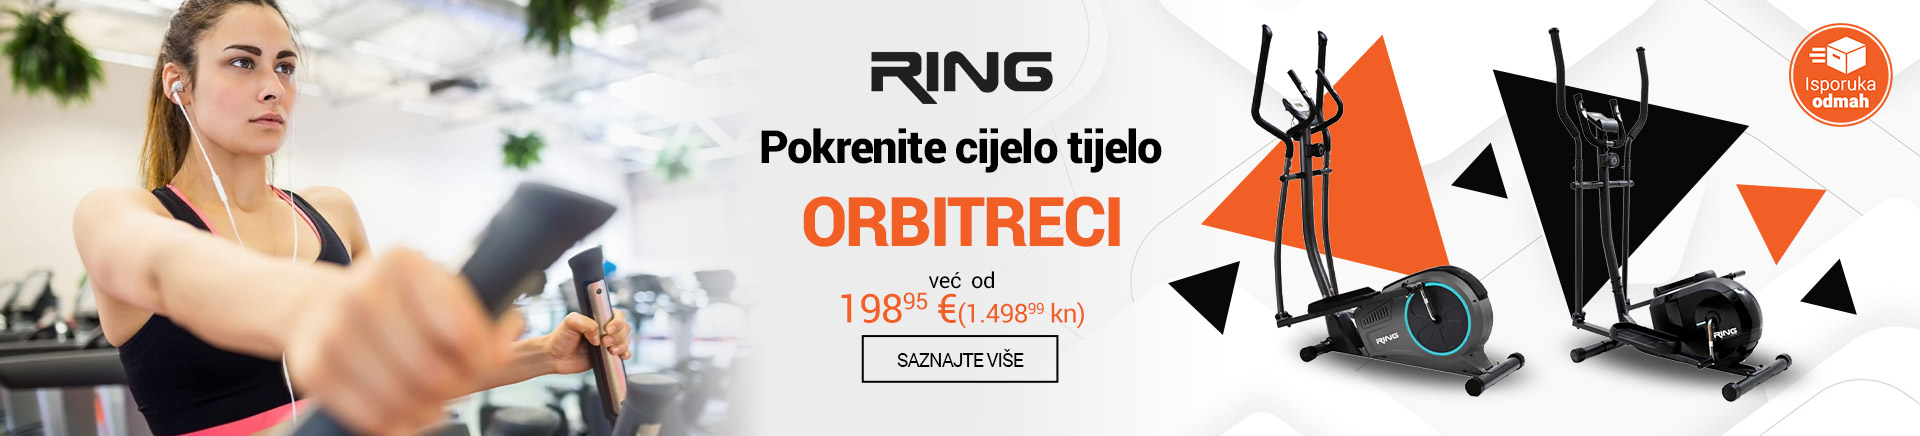 HR RING Orbitreci MOBILE 380 X 436.jpg